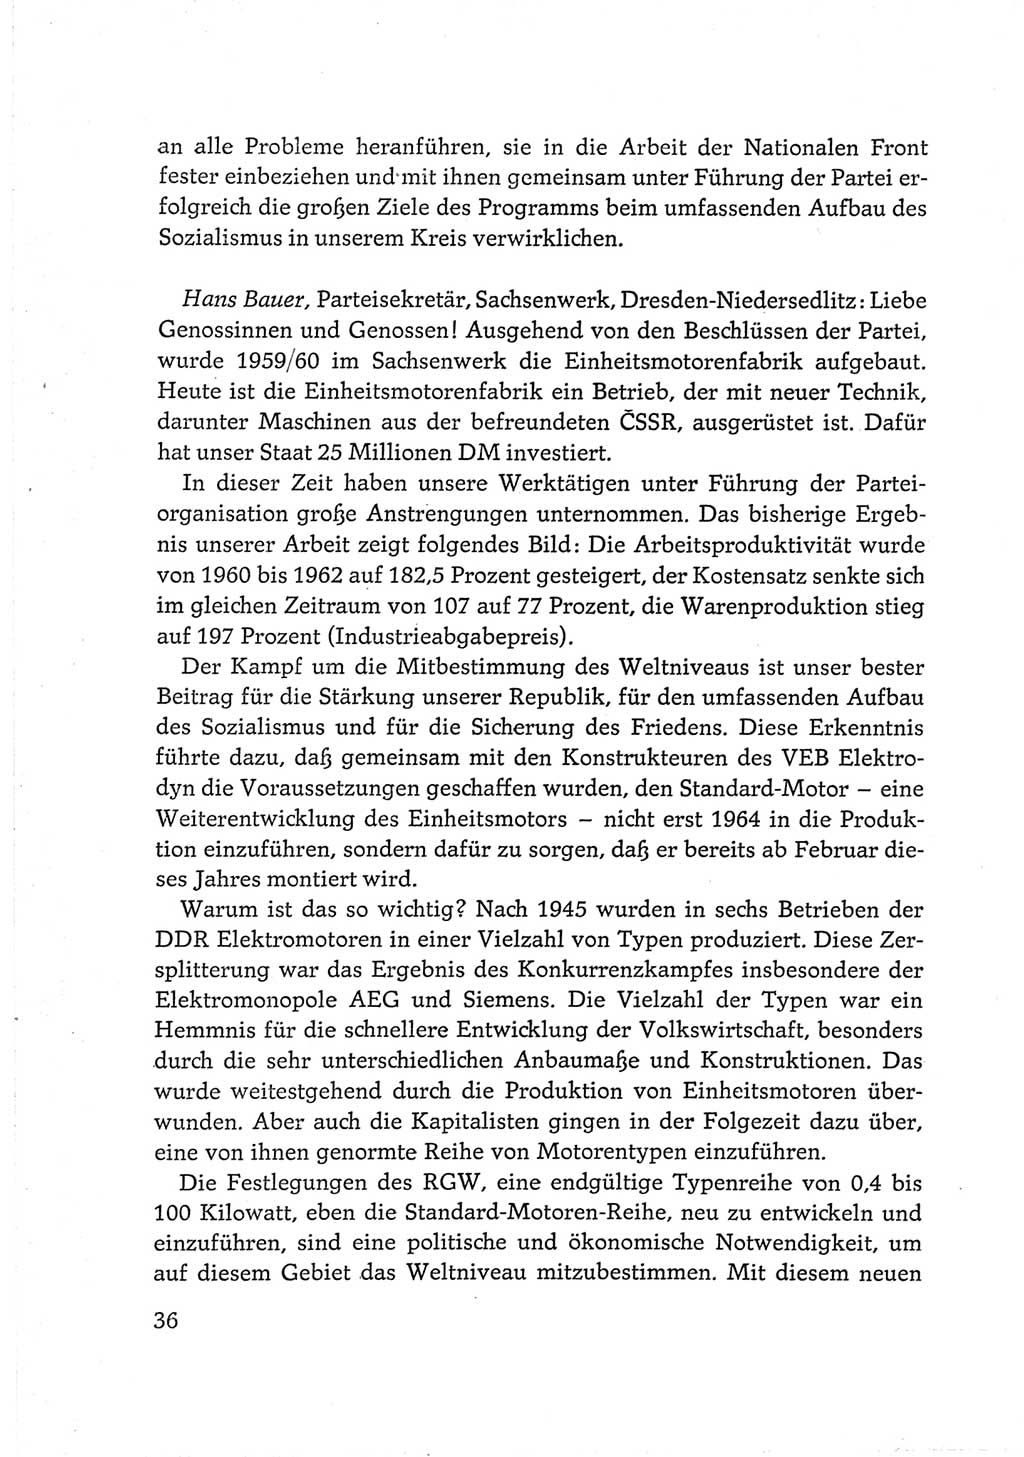 Protokoll der Verhandlungen des Ⅵ. Parteitages der Sozialistischen Einheitspartei Deutschlands (SED) [Deutsche Demokratische Republik (DDR)] 1963, Band Ⅲ, Seite 36 (Prot. Verh. Ⅵ. PT SED DDR 1963, Bd. Ⅲ, S. 36)